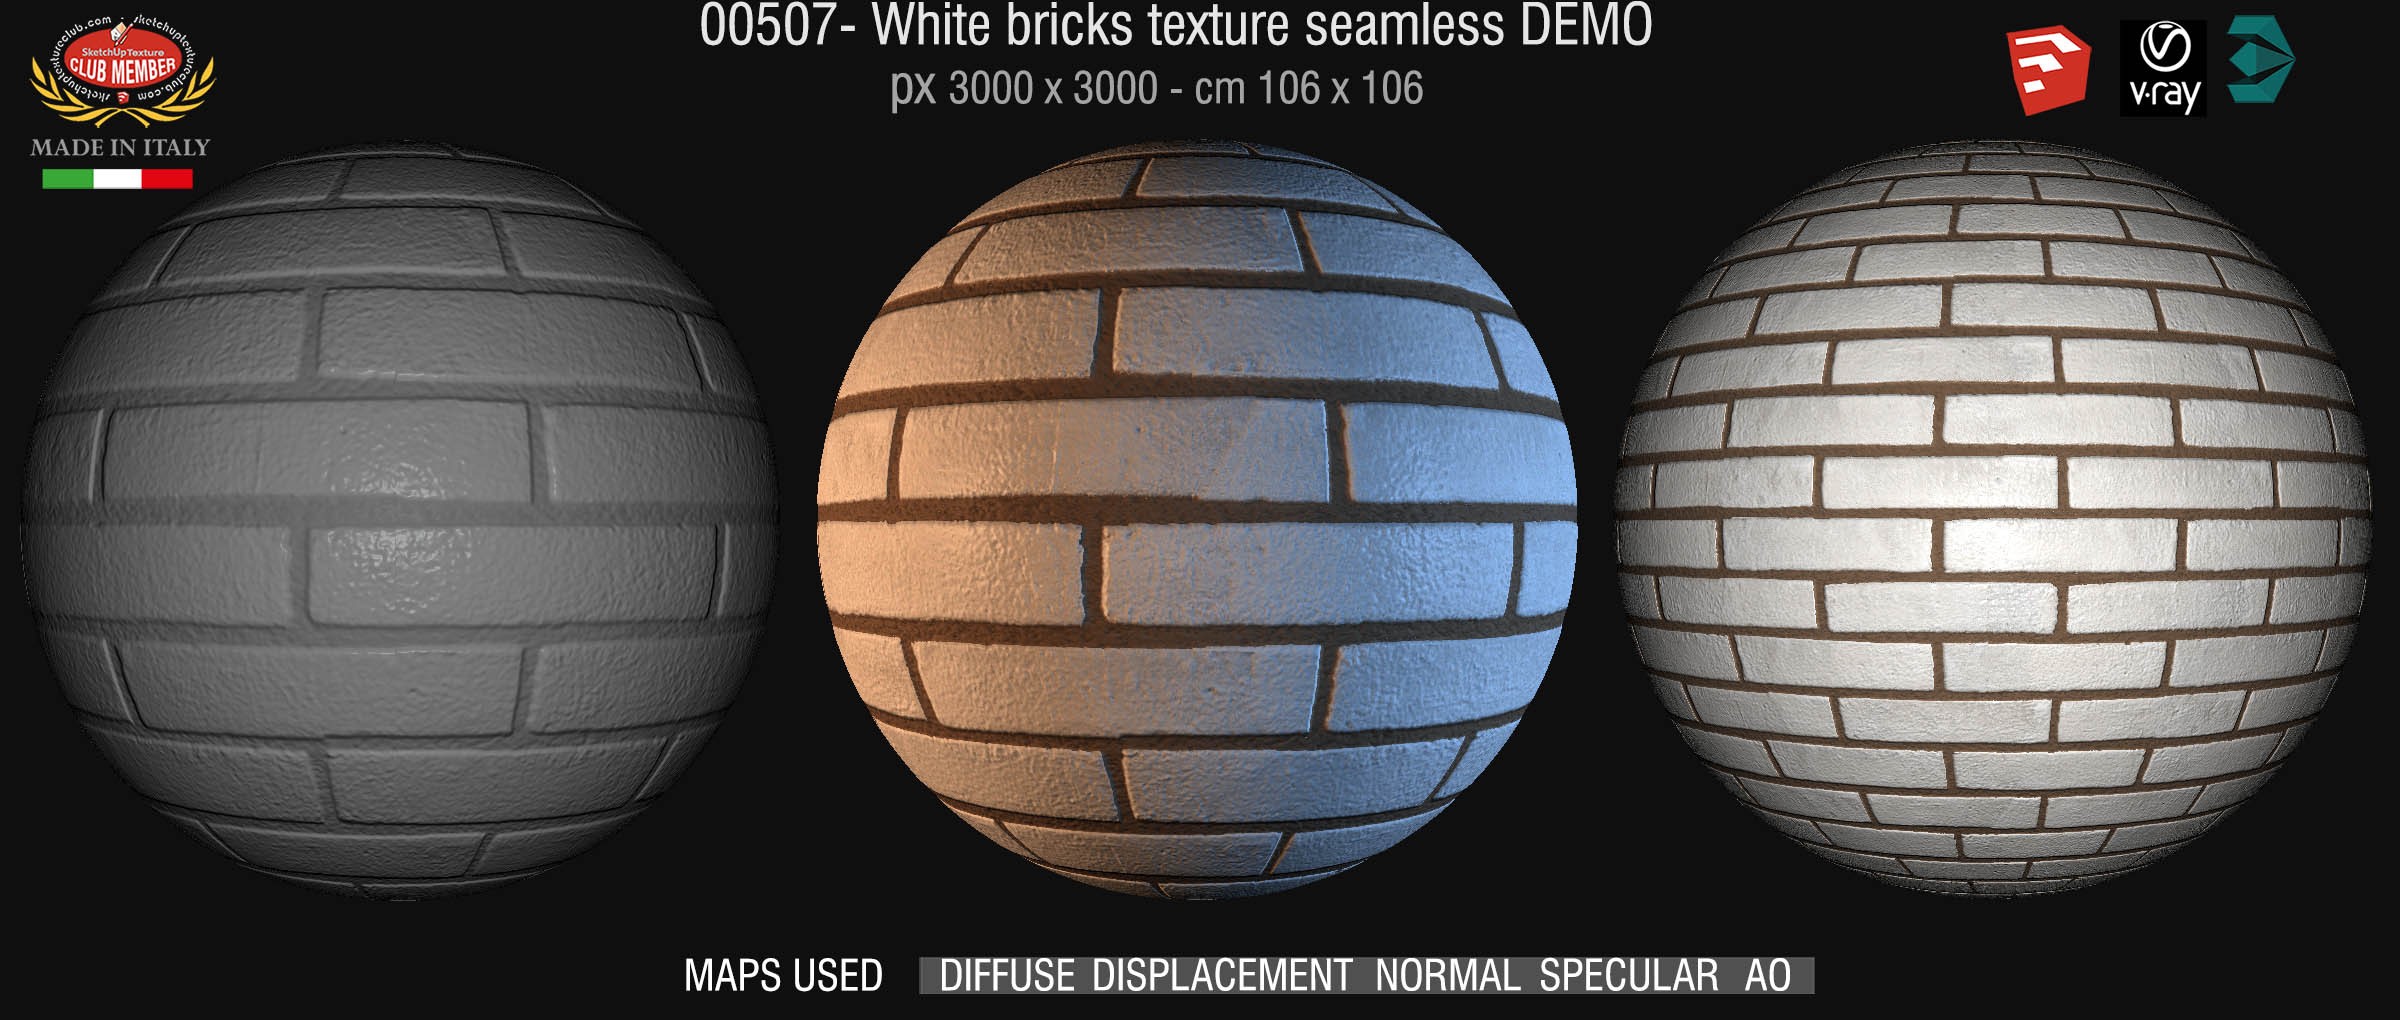 00507 White bricks texture seamless + maps DEMO